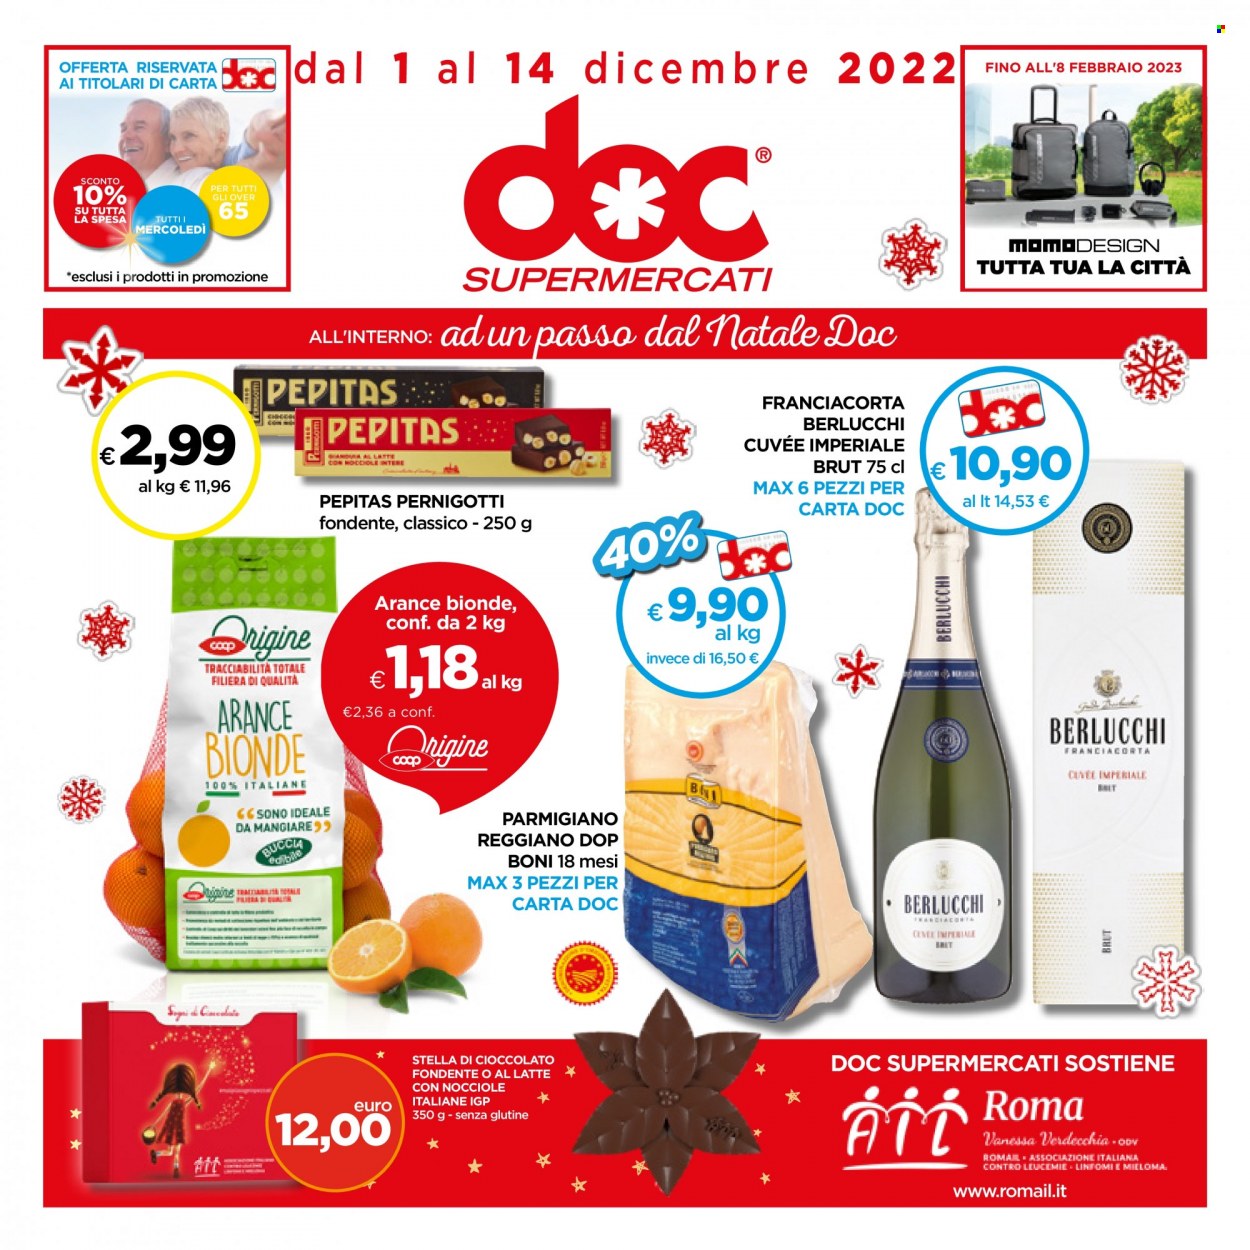 thumbnail - Volantino doc supermercati - 1/12/2022 - 14/12/2022 - Prodotti in offerta - arance, formaggio, parmigiano. Pagina 1.